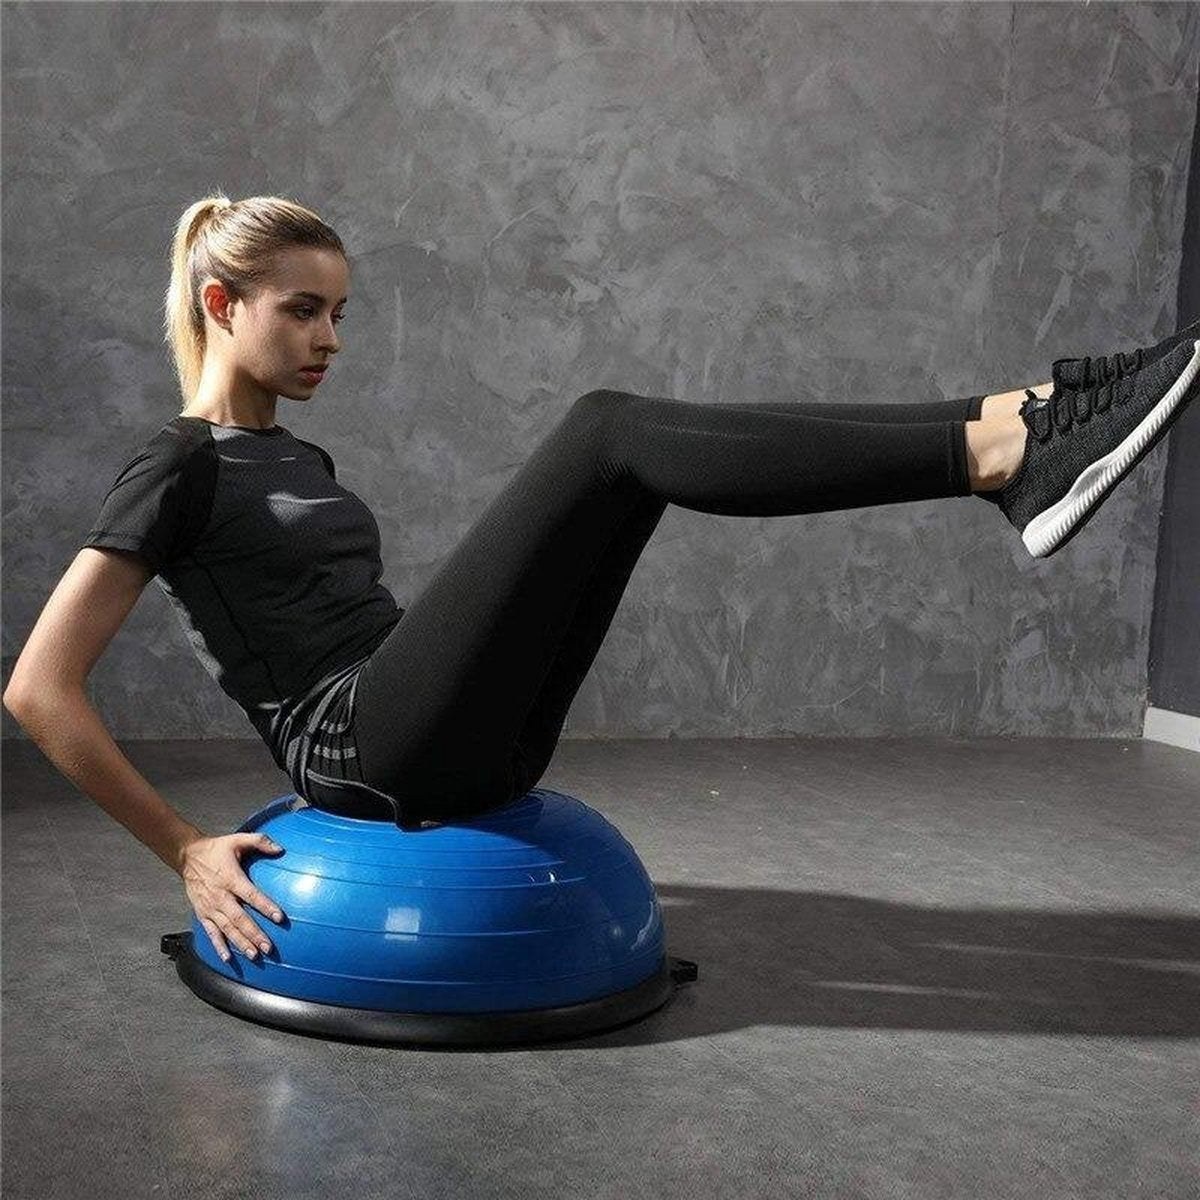 Ariko Planche d'équilibre professionnelle avec bandes de résistance - Entraîneur d'équilibre - Ballon d'équilibre - Entraîneur complet du corps - Pompe incluse